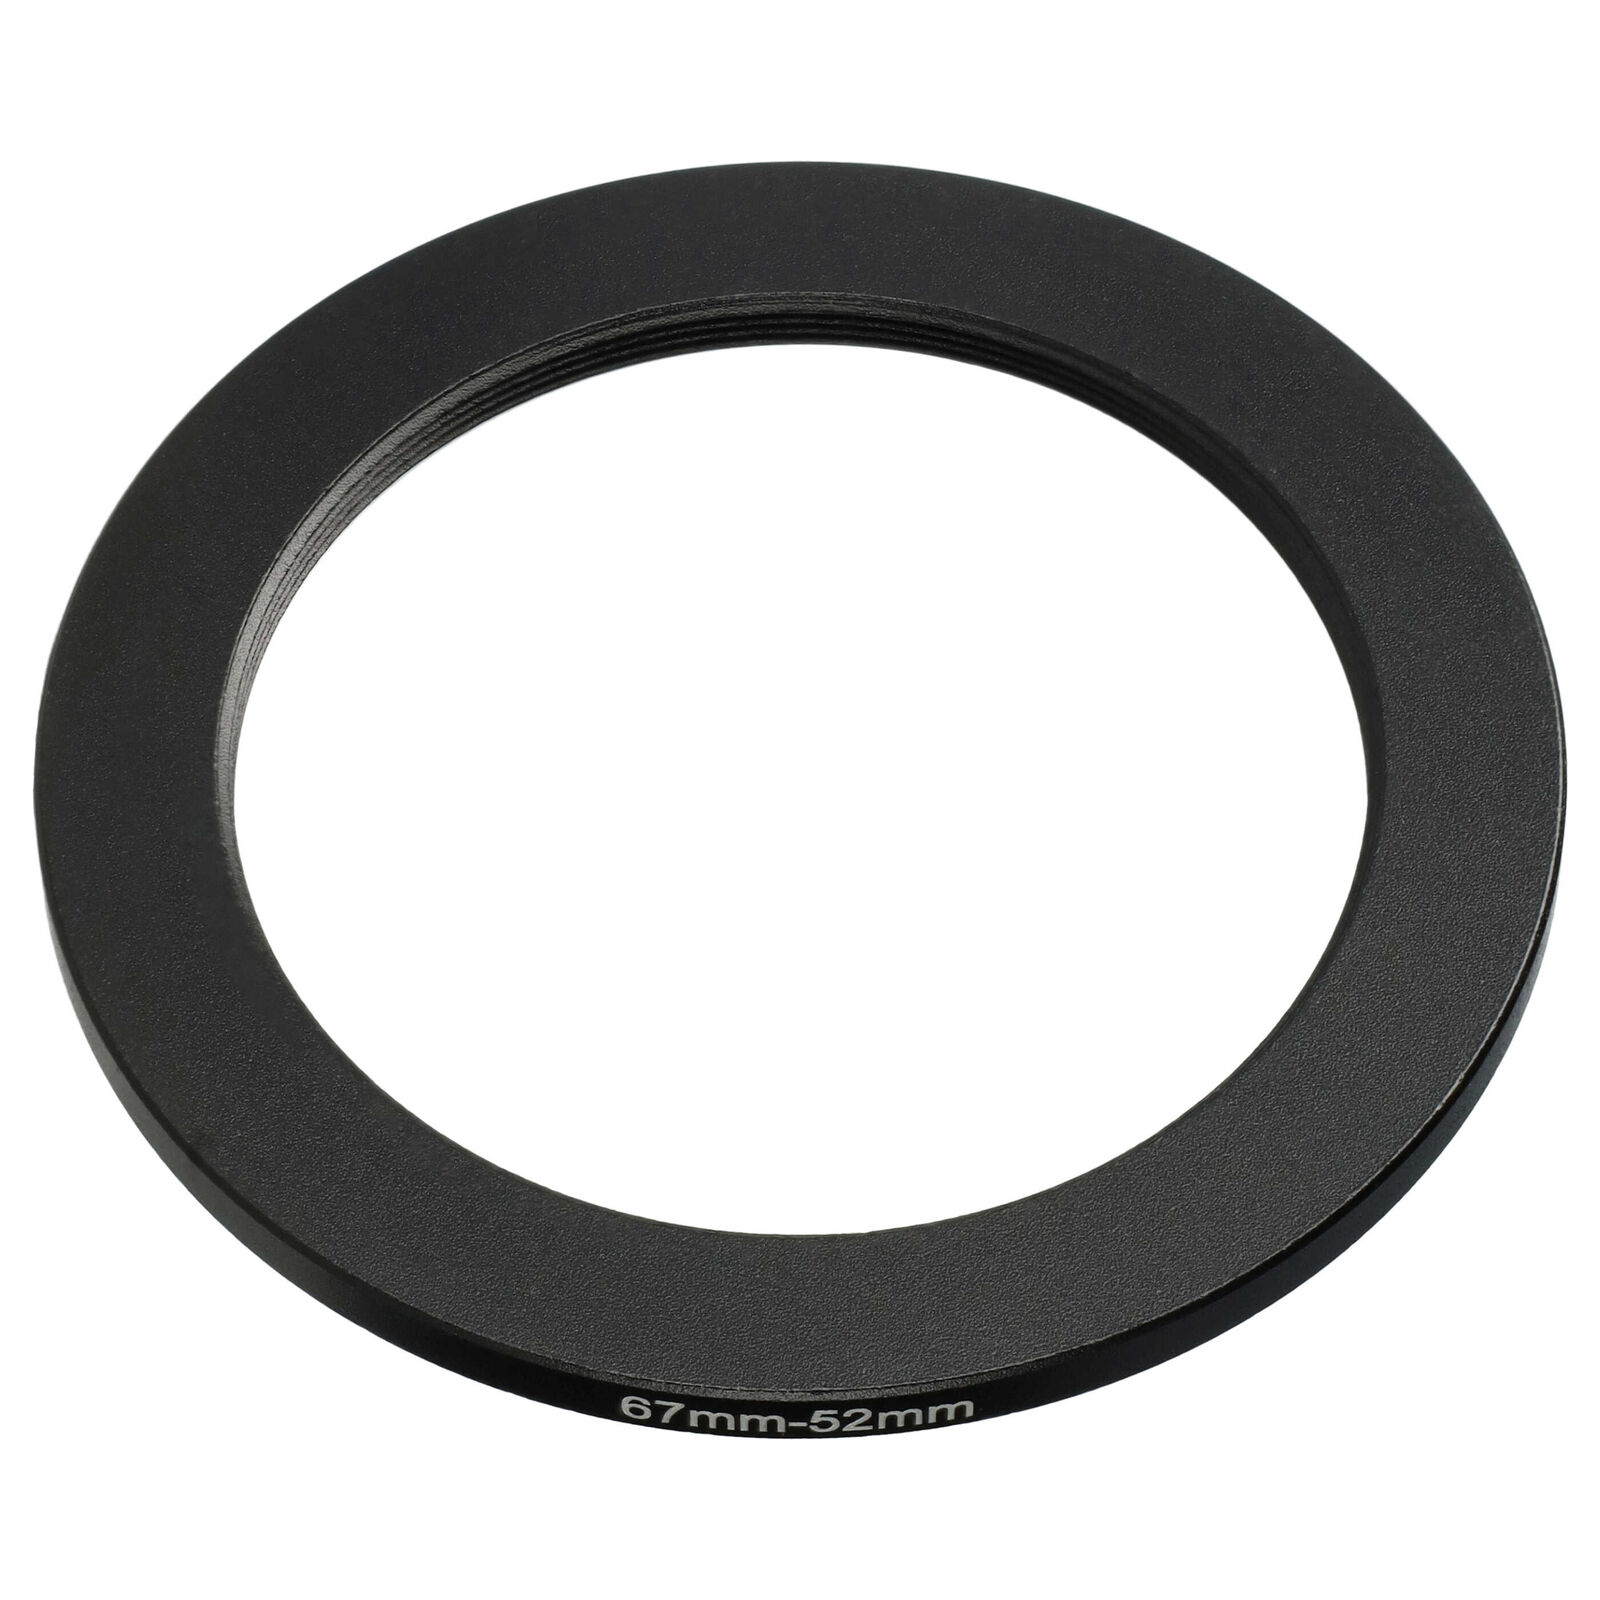 Step-Down Ring Adapter von 67mm auf 52mm für Nikon 70-300mm 4,5-5,6 AF-S VR G IF